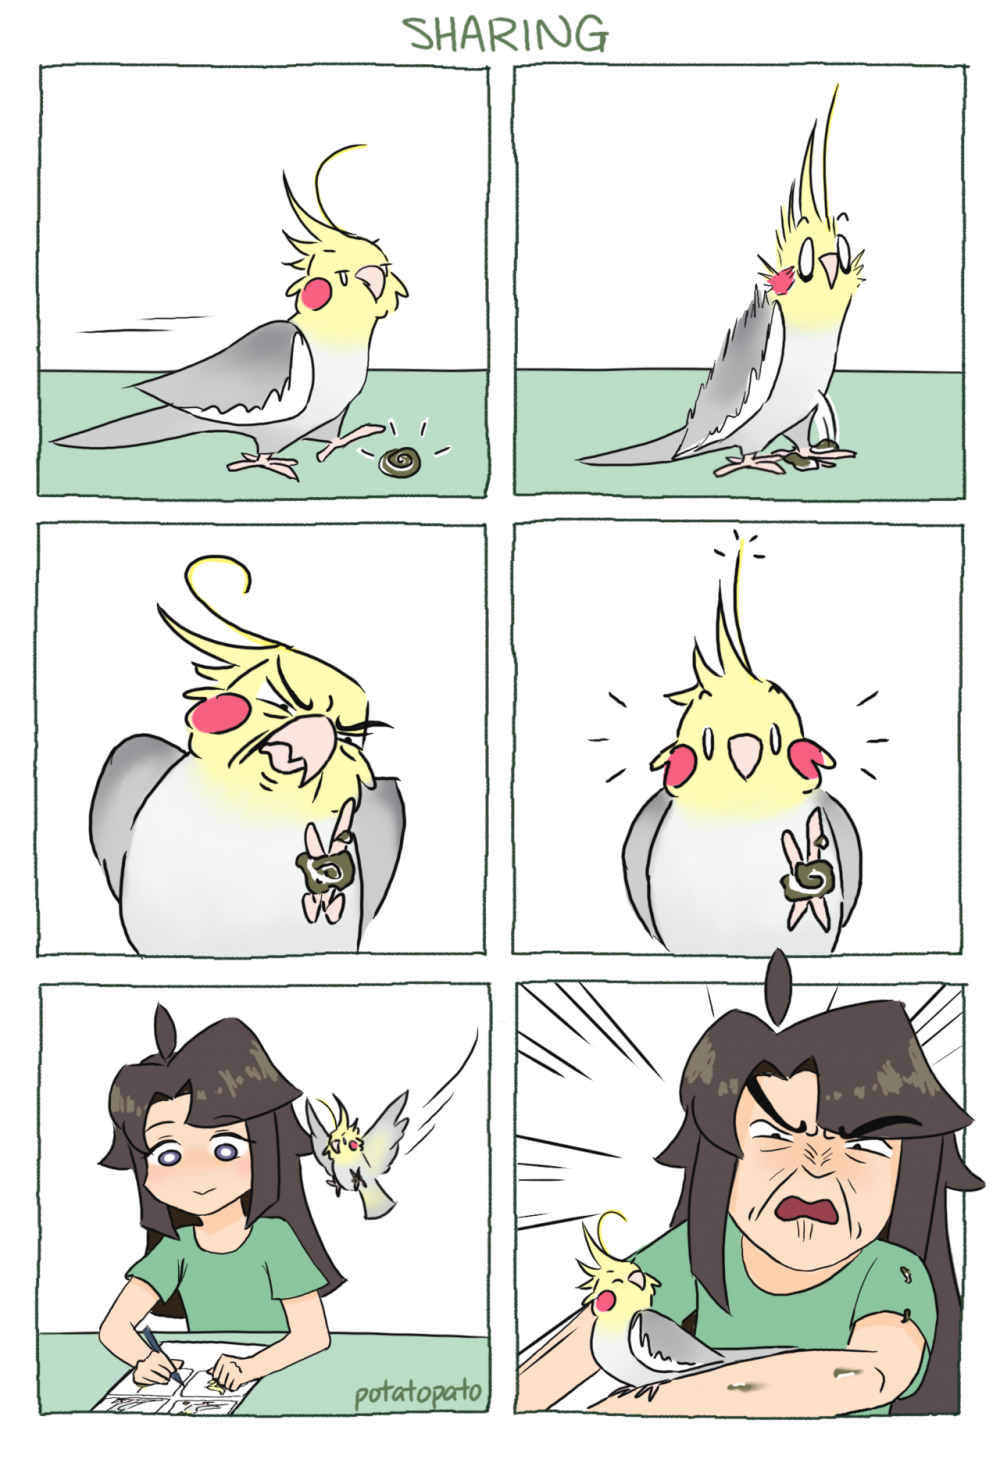 Комиксы про попугаев